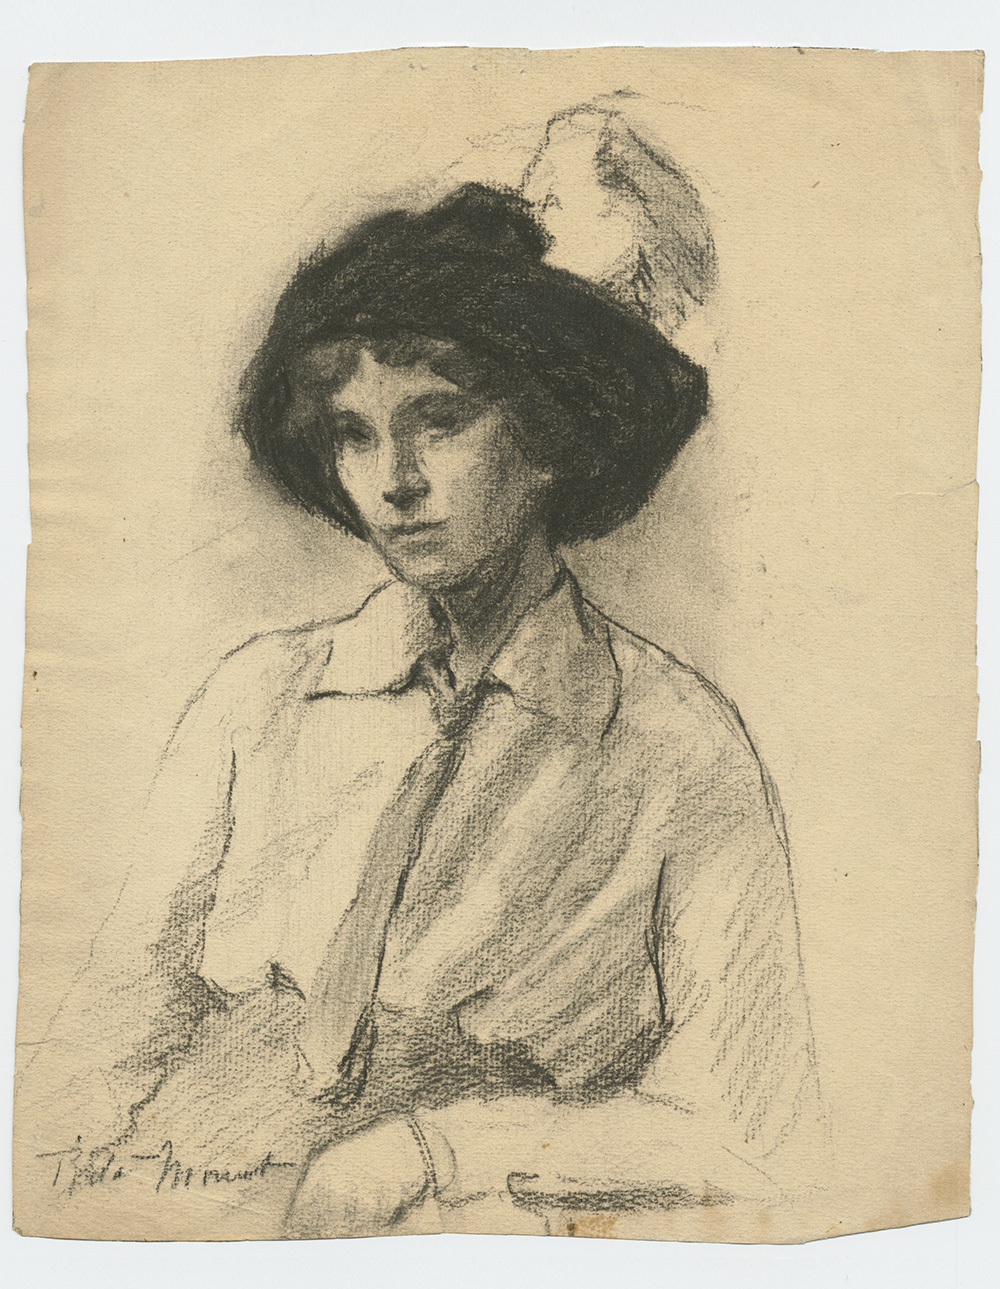 Croquis de fusain en noir et blanc montrant le portrait d'une femme portant un chapeau à plume et une chemise avec cravate